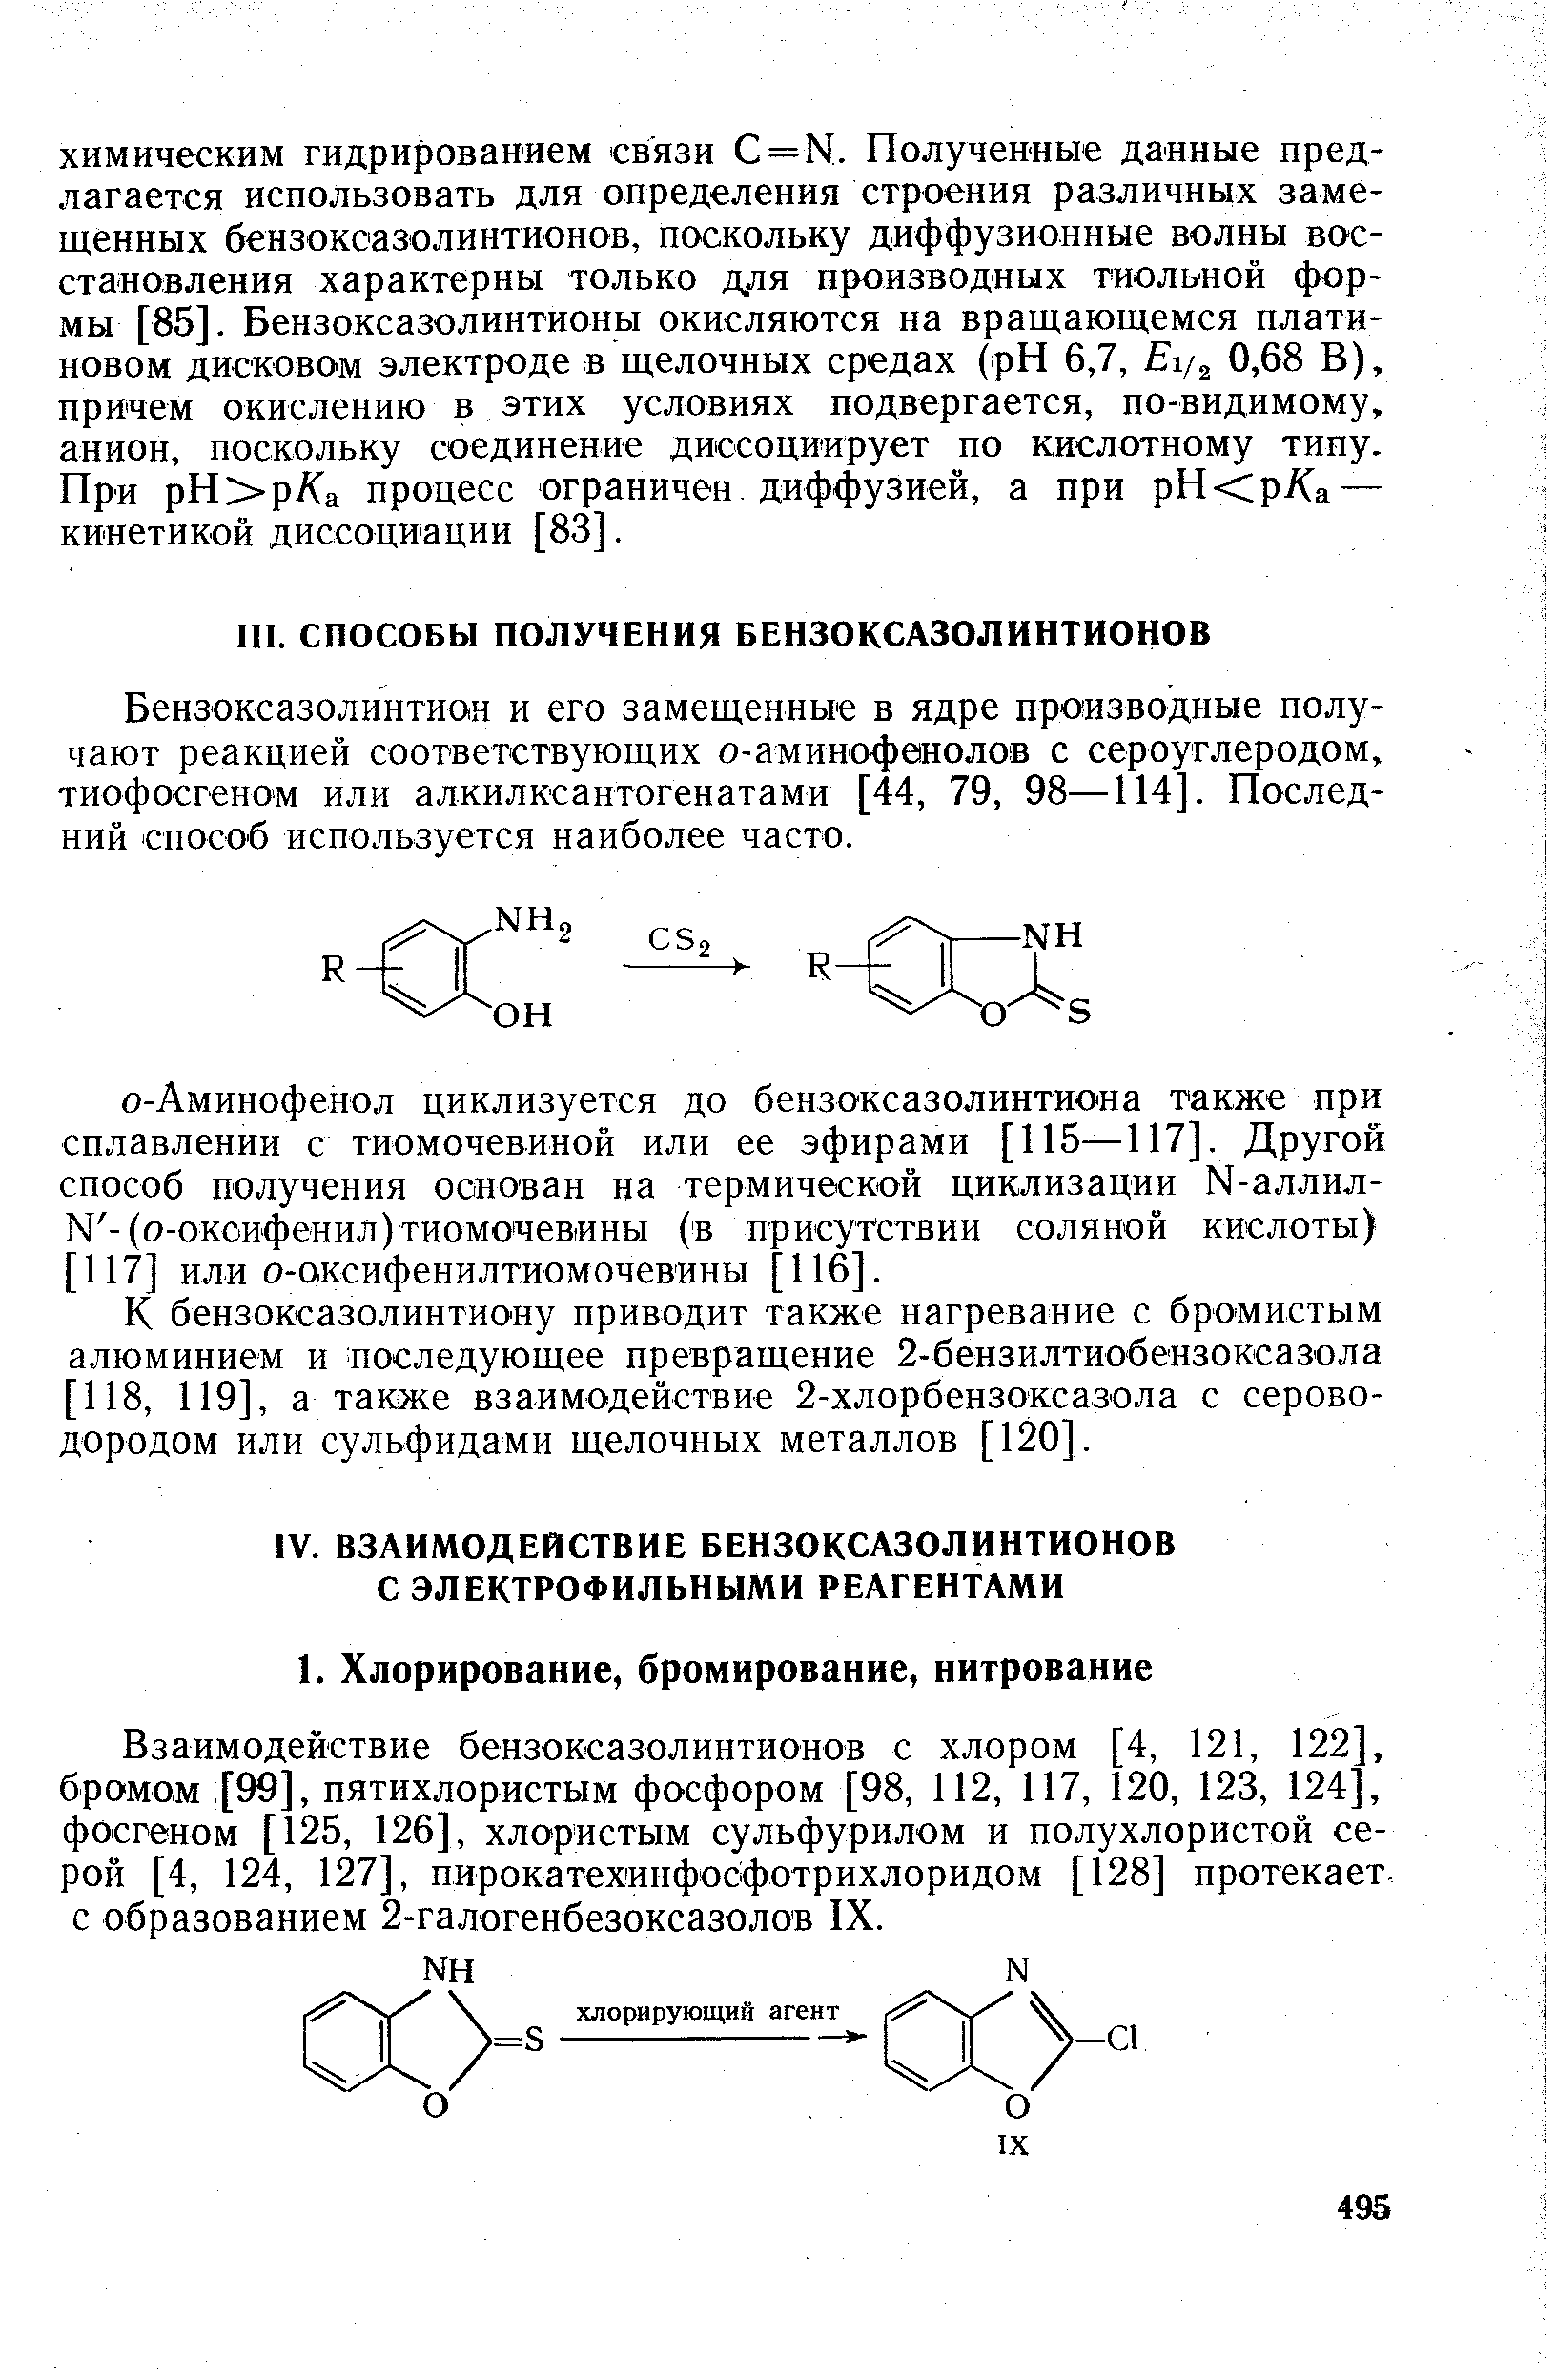 Бензоксазолинтион и его замещенные в ядре производные получают реакцией соответствующих о-аминофенолов с сероуглеродом, тиофосгеном или алкилксаптогенатами [44, 79, 98—114]. Последний способ используется наиболее часто.